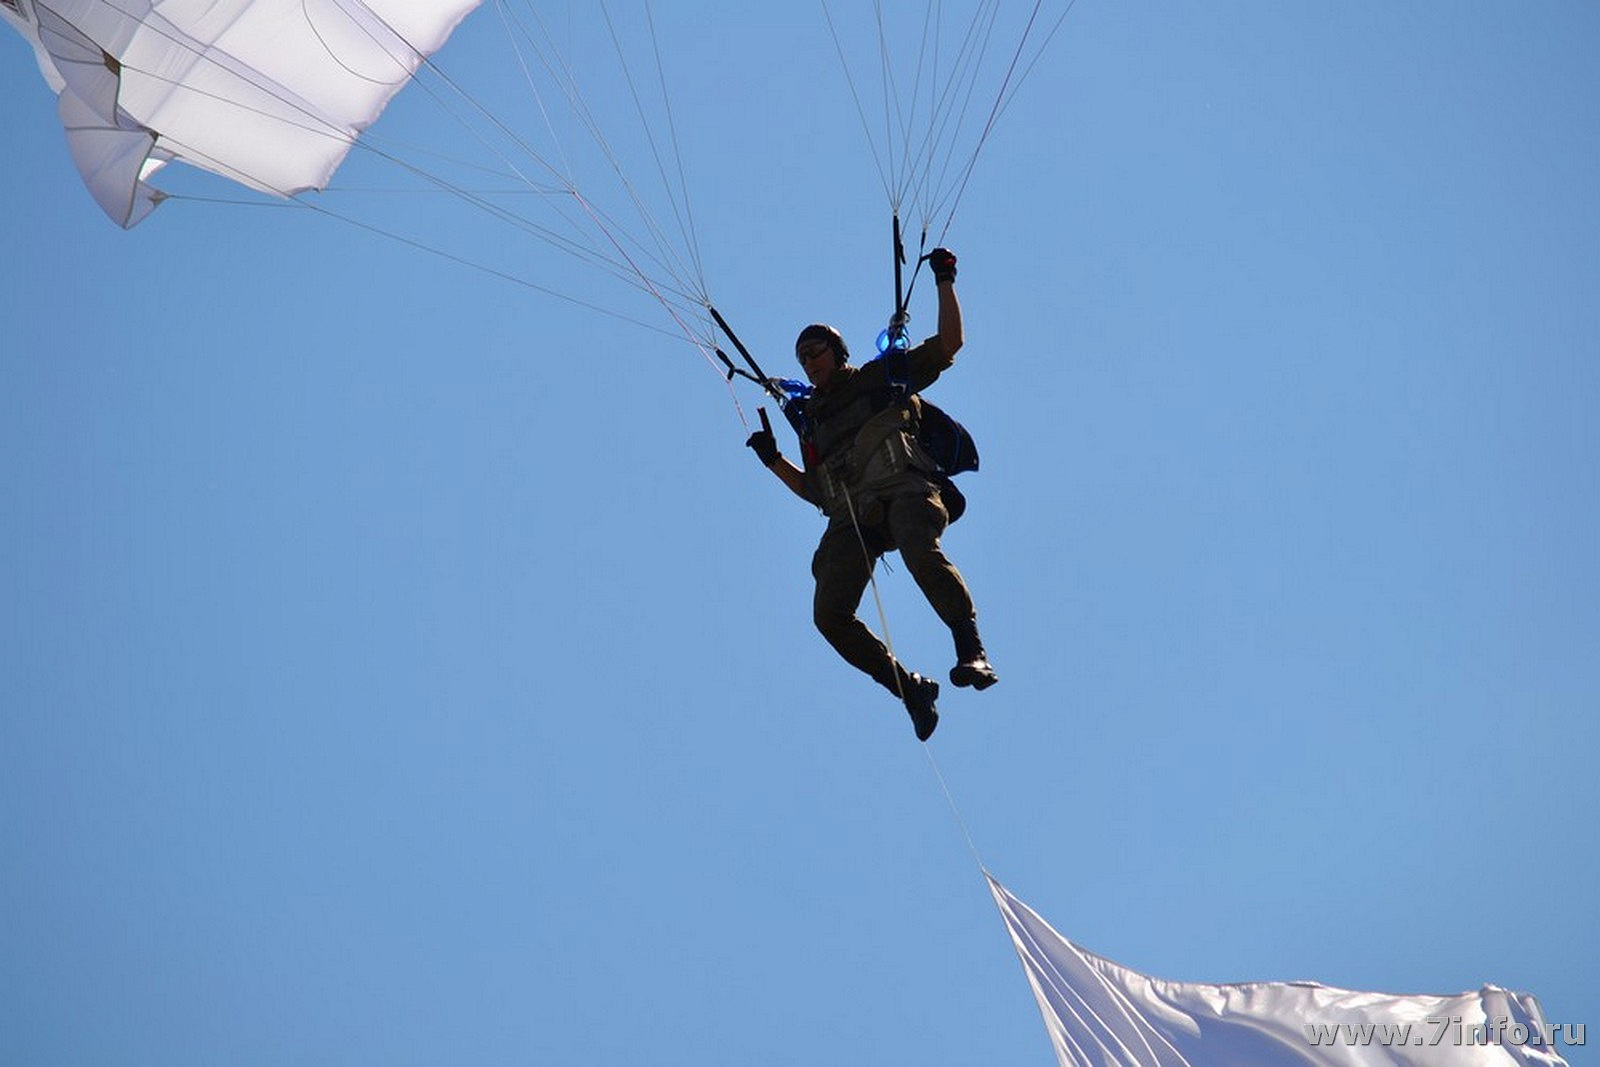 Спортсмен спускаясь на парашюте. Парашютист. Десантник с парашютом. Парашютист приземляется. Парашютист на дереве.